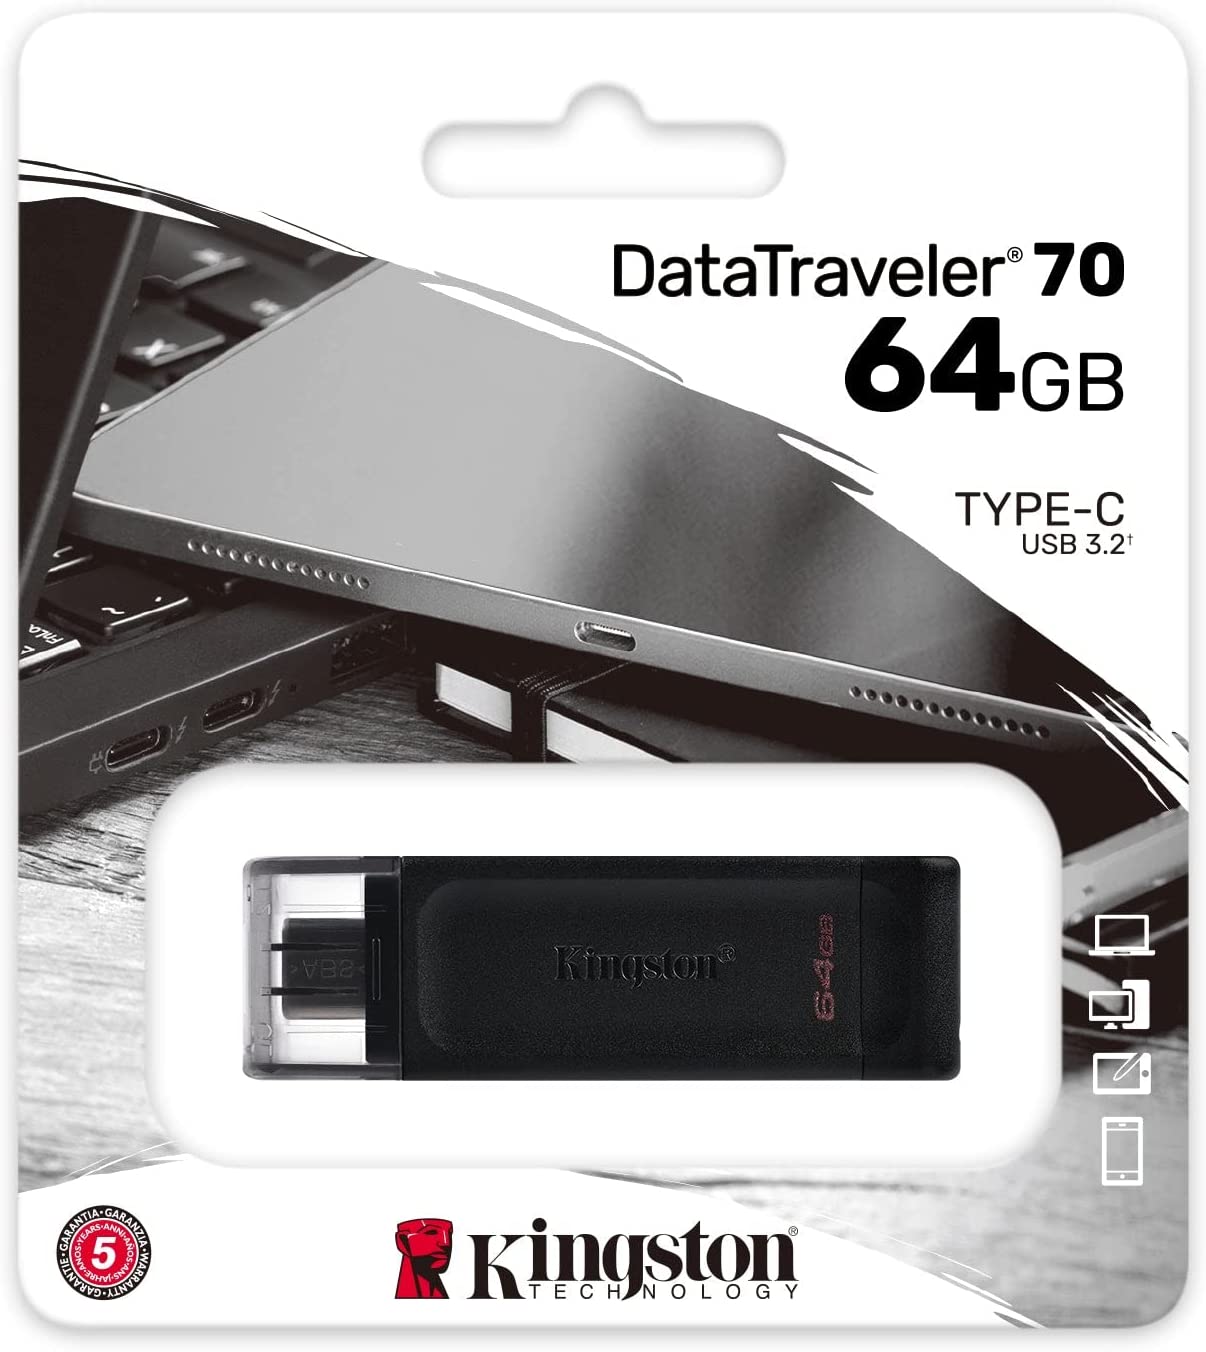 Kingston DataTraveler 64GB Type-C flashdrive with USB 3.2 $3.99 shipped w/ Prime